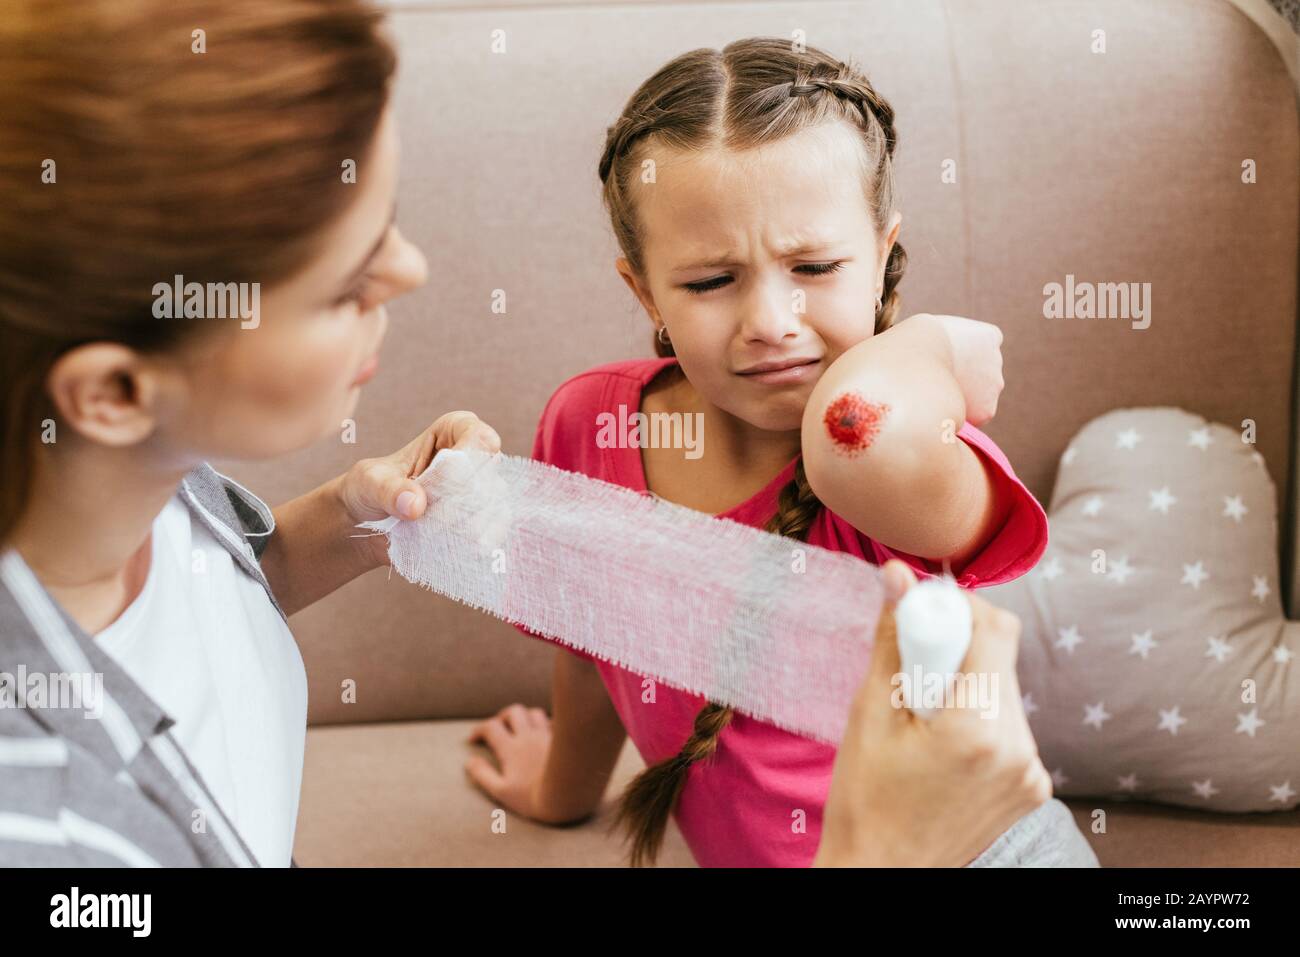 la mère s'inquiétait de bandage autour du coude de la fille pleurant Banque D'Images